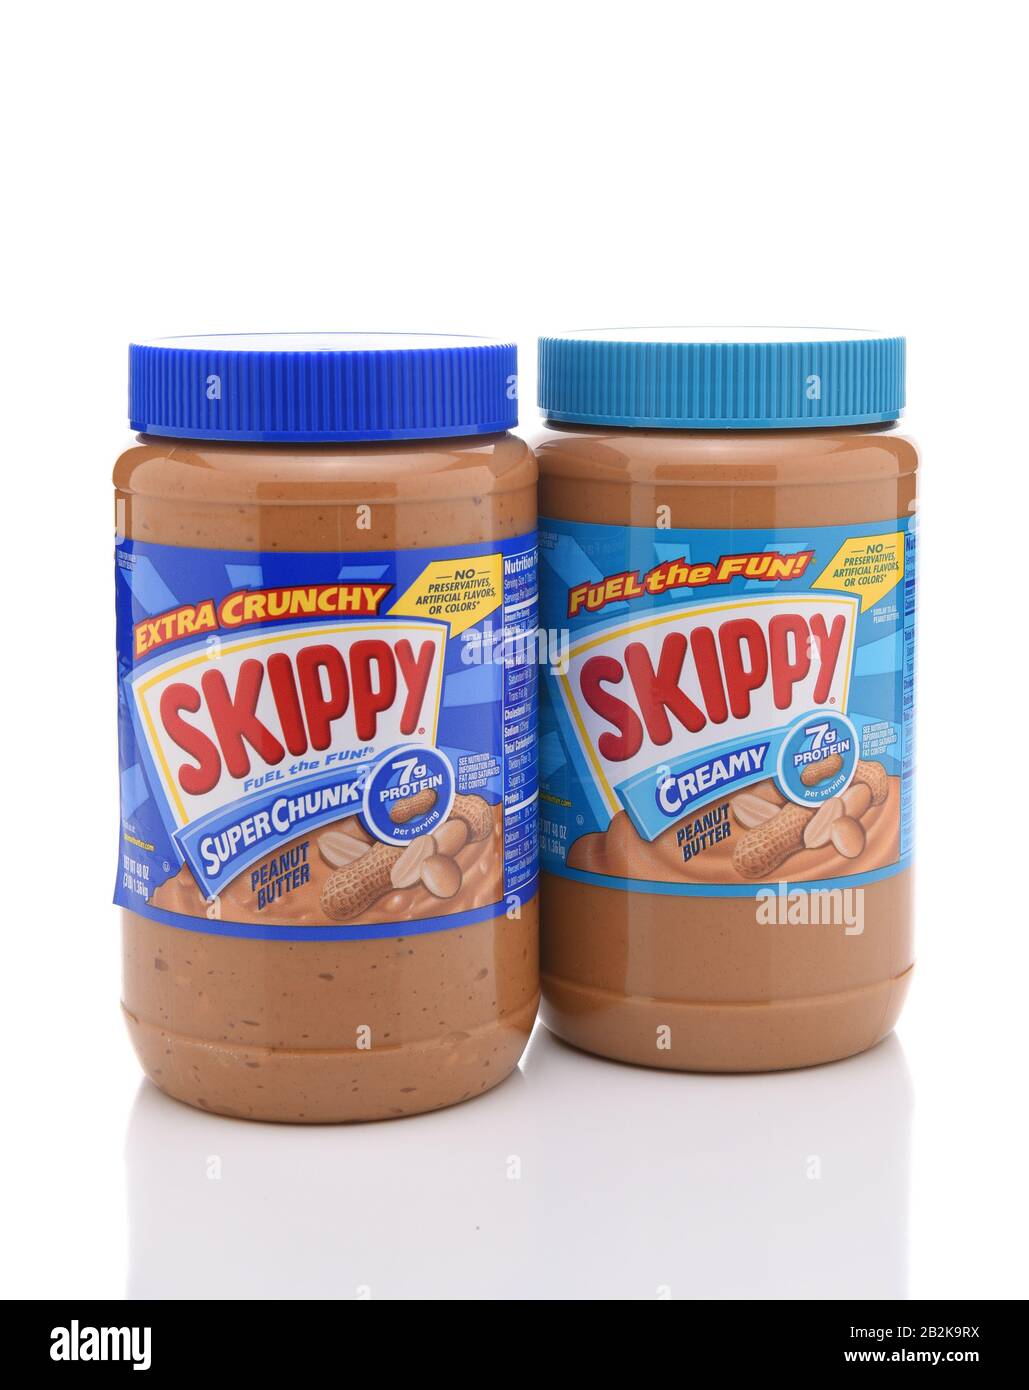 Irvine, KALIFORNIEN - 10. JULI 2017: Skippy SuperChunk und Cremige Peanut-Butter. Skippy wurde zunächst vom Rosefiel als Markenzeichen für Erdnussbutter verwendet Stockfoto